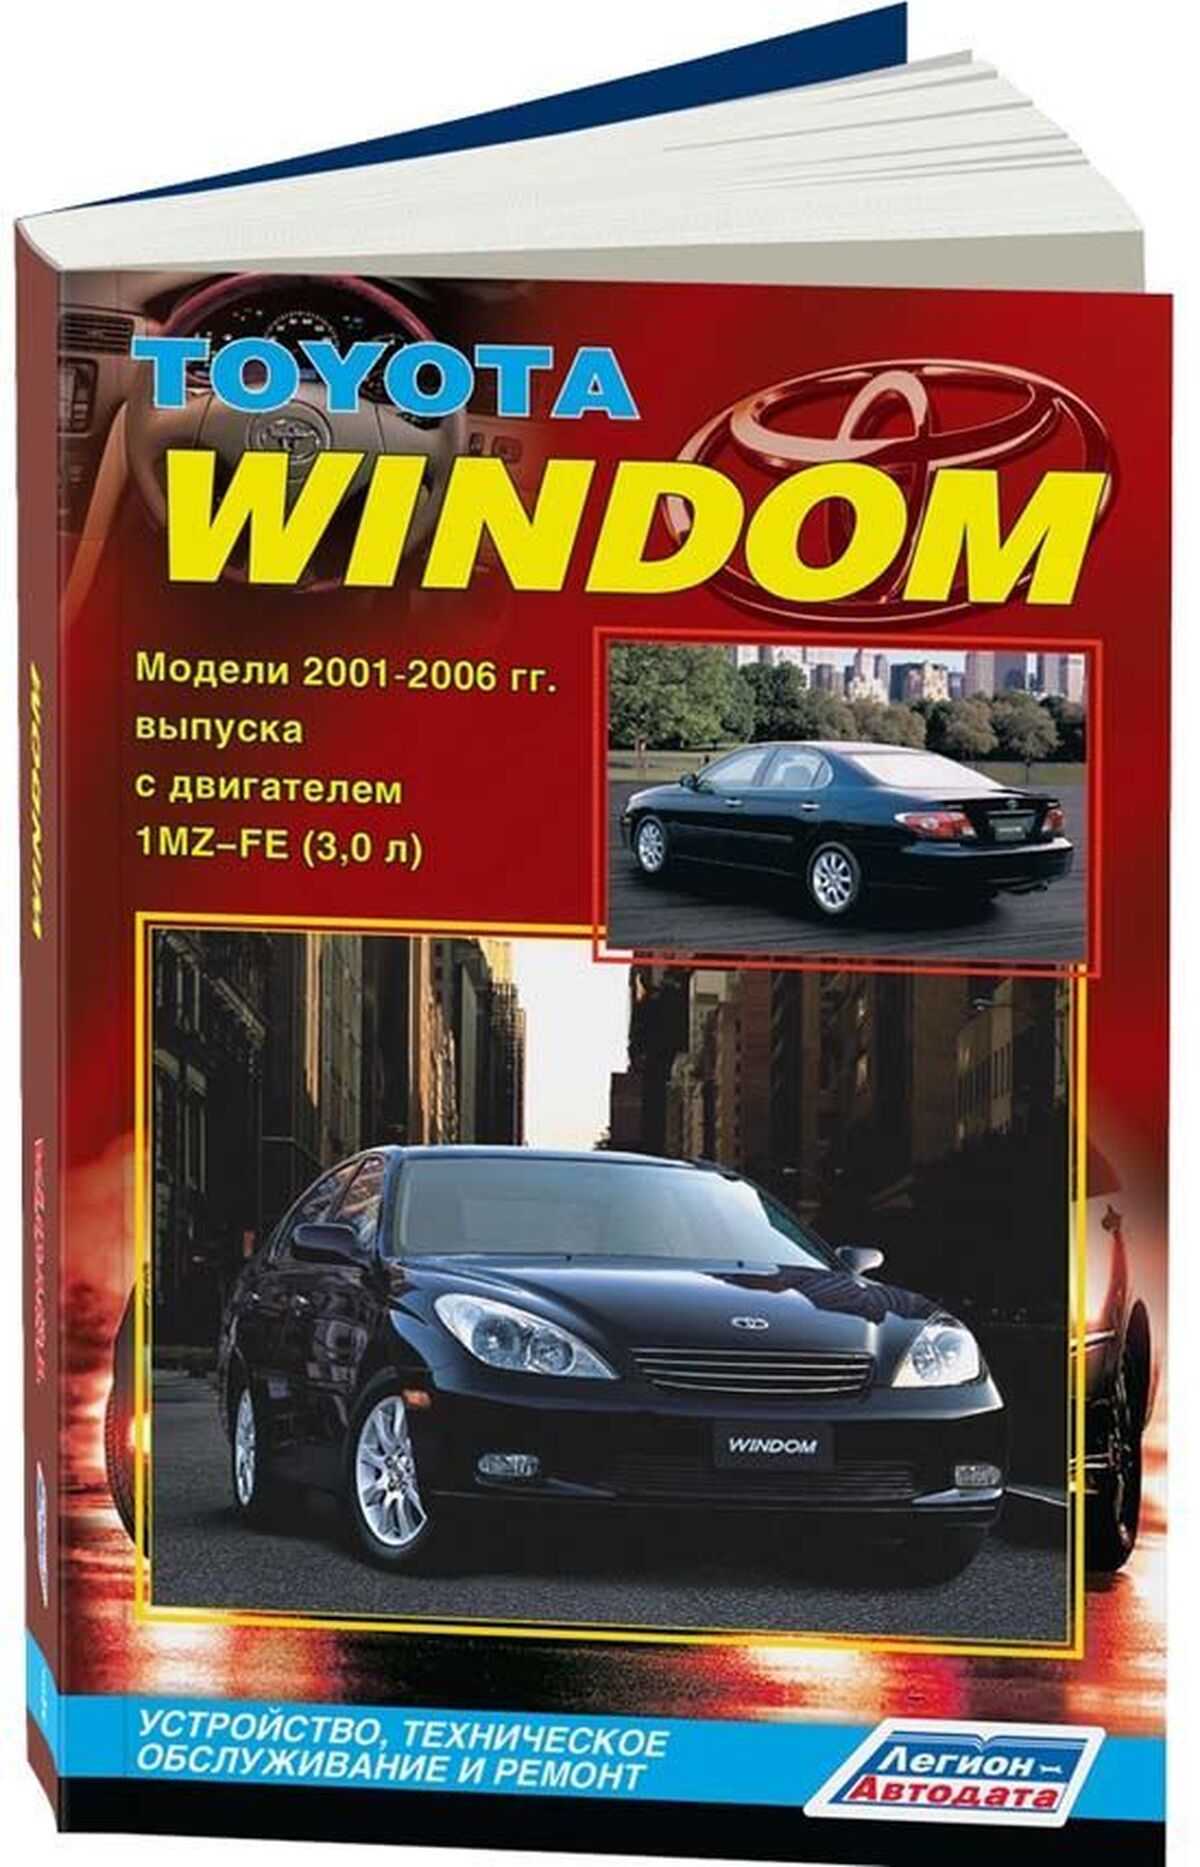 Книга: TOYOTA WINDOM (б) 2001-2006 г.в., рем., экспл., то | Легион-Aвтодата